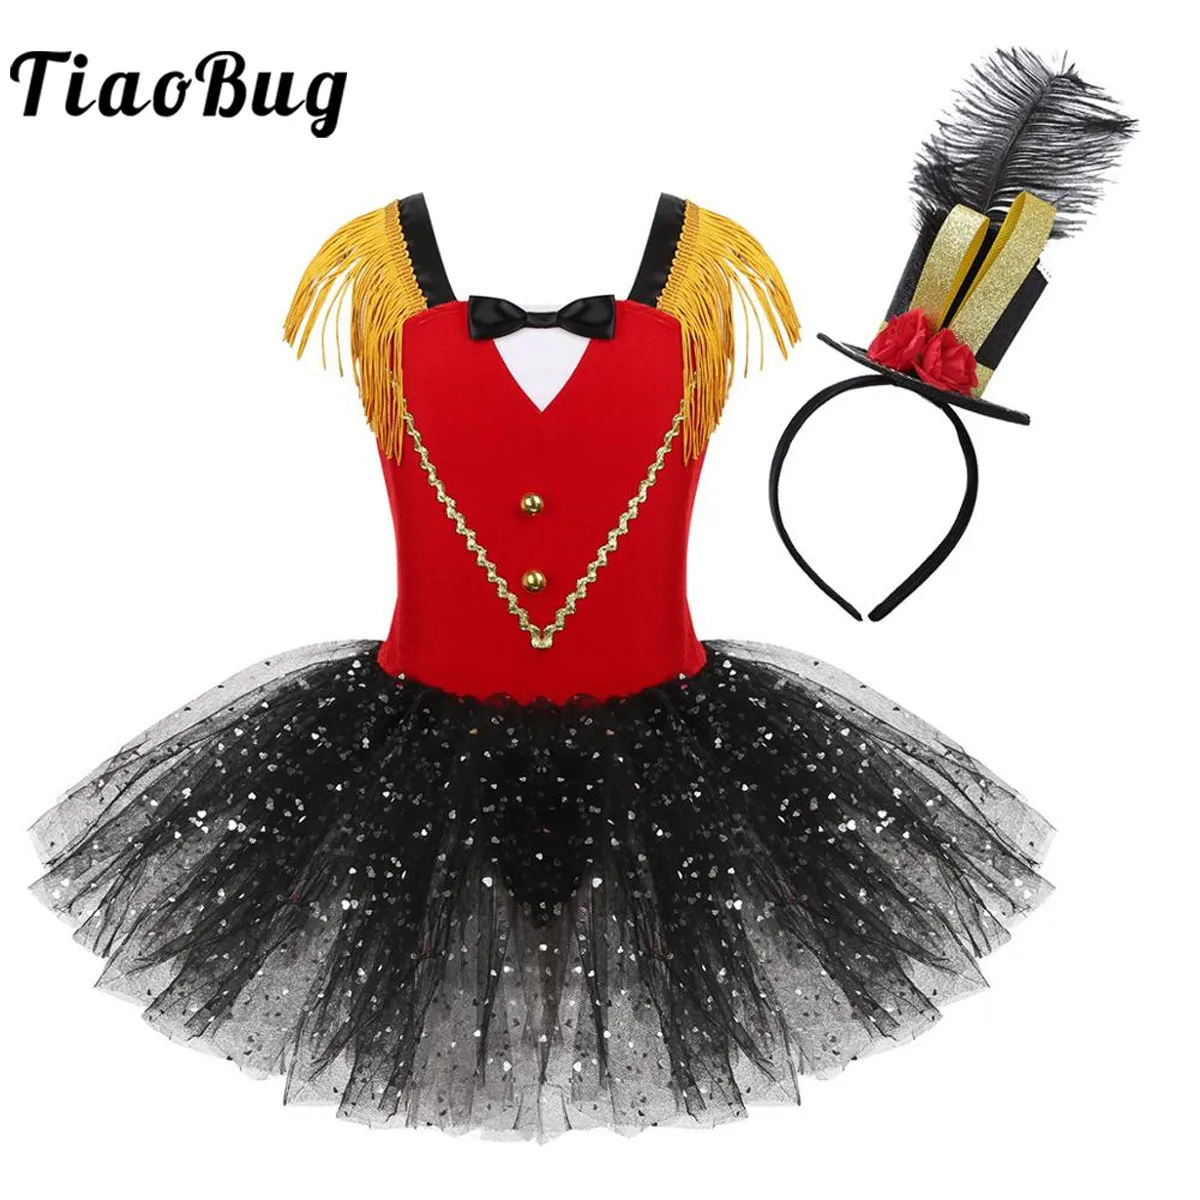 TiaoBug/Детский костюм для девочек на Хэллоуин цирка карнавальный джазового